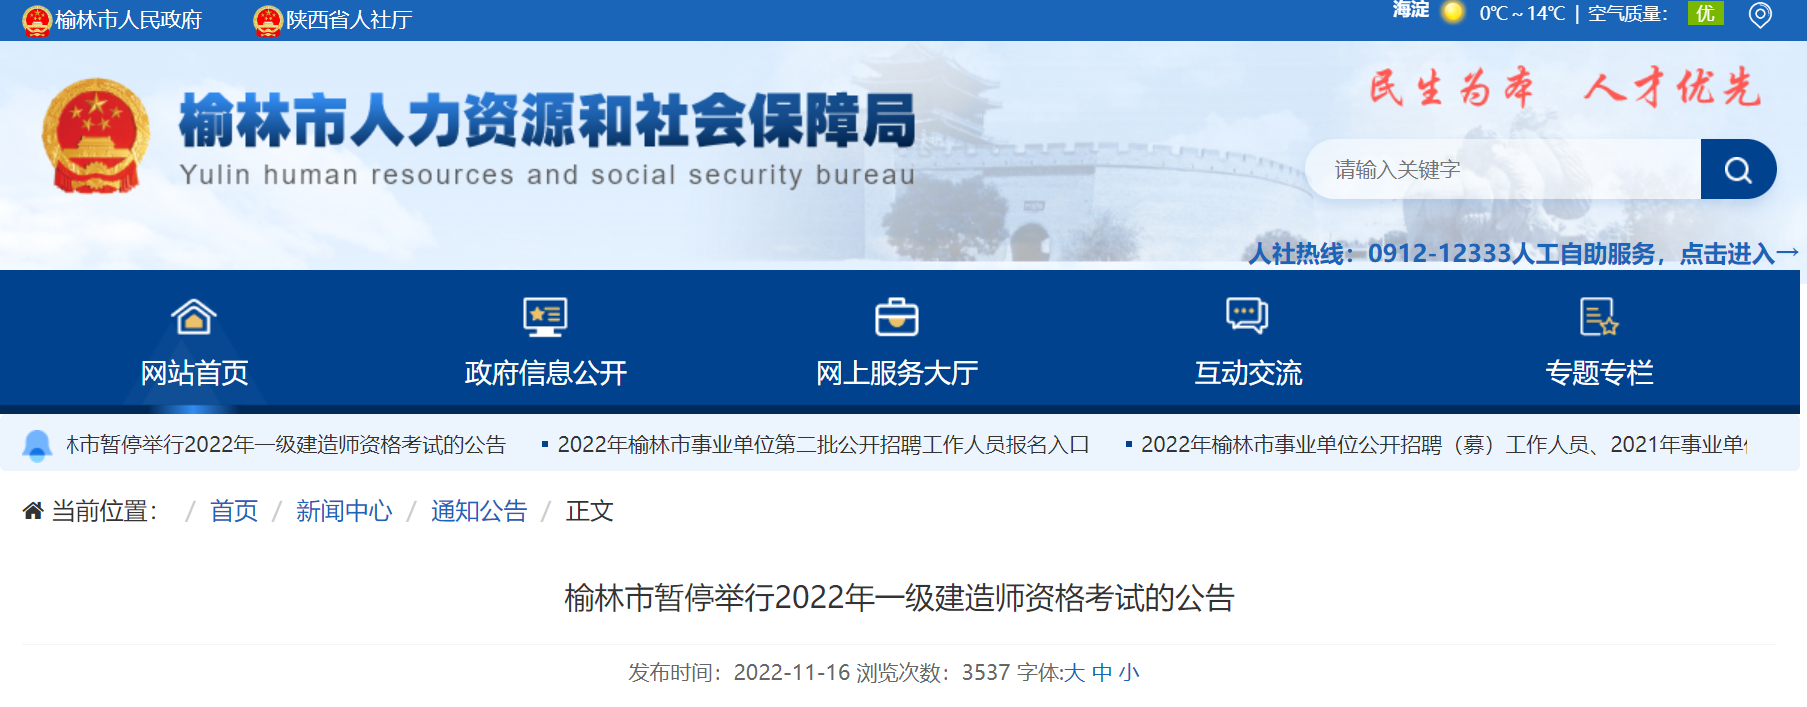 2022年陕西榆林一级建造师考试暂停举行的通知